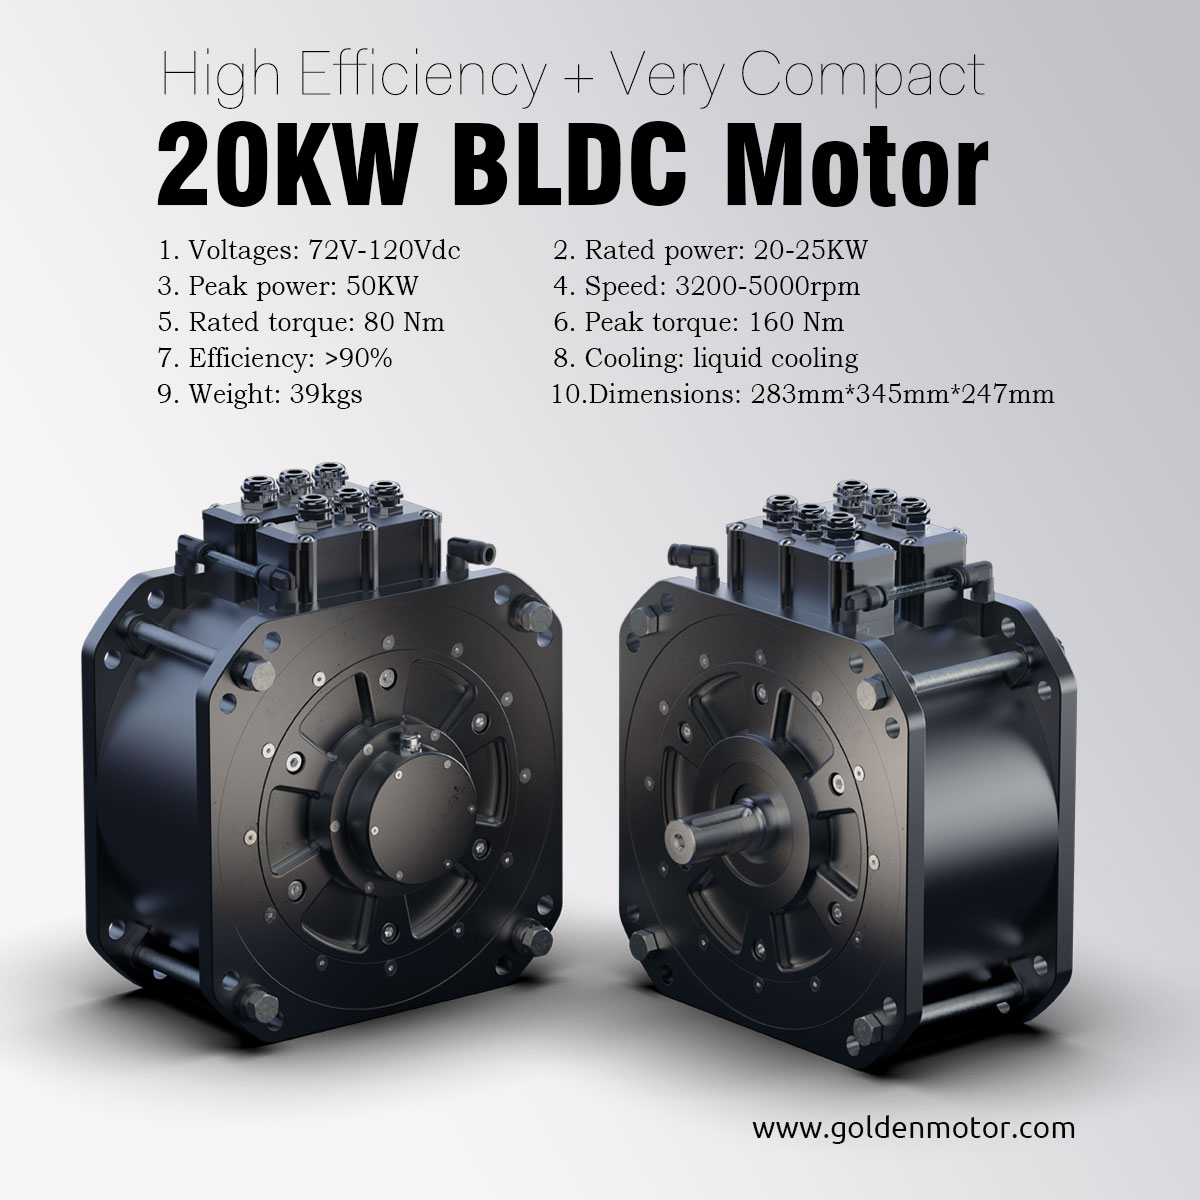 brushless motor, bldc motor, electric car motor, 20KW electric car motor, 20KW BLDC Motor